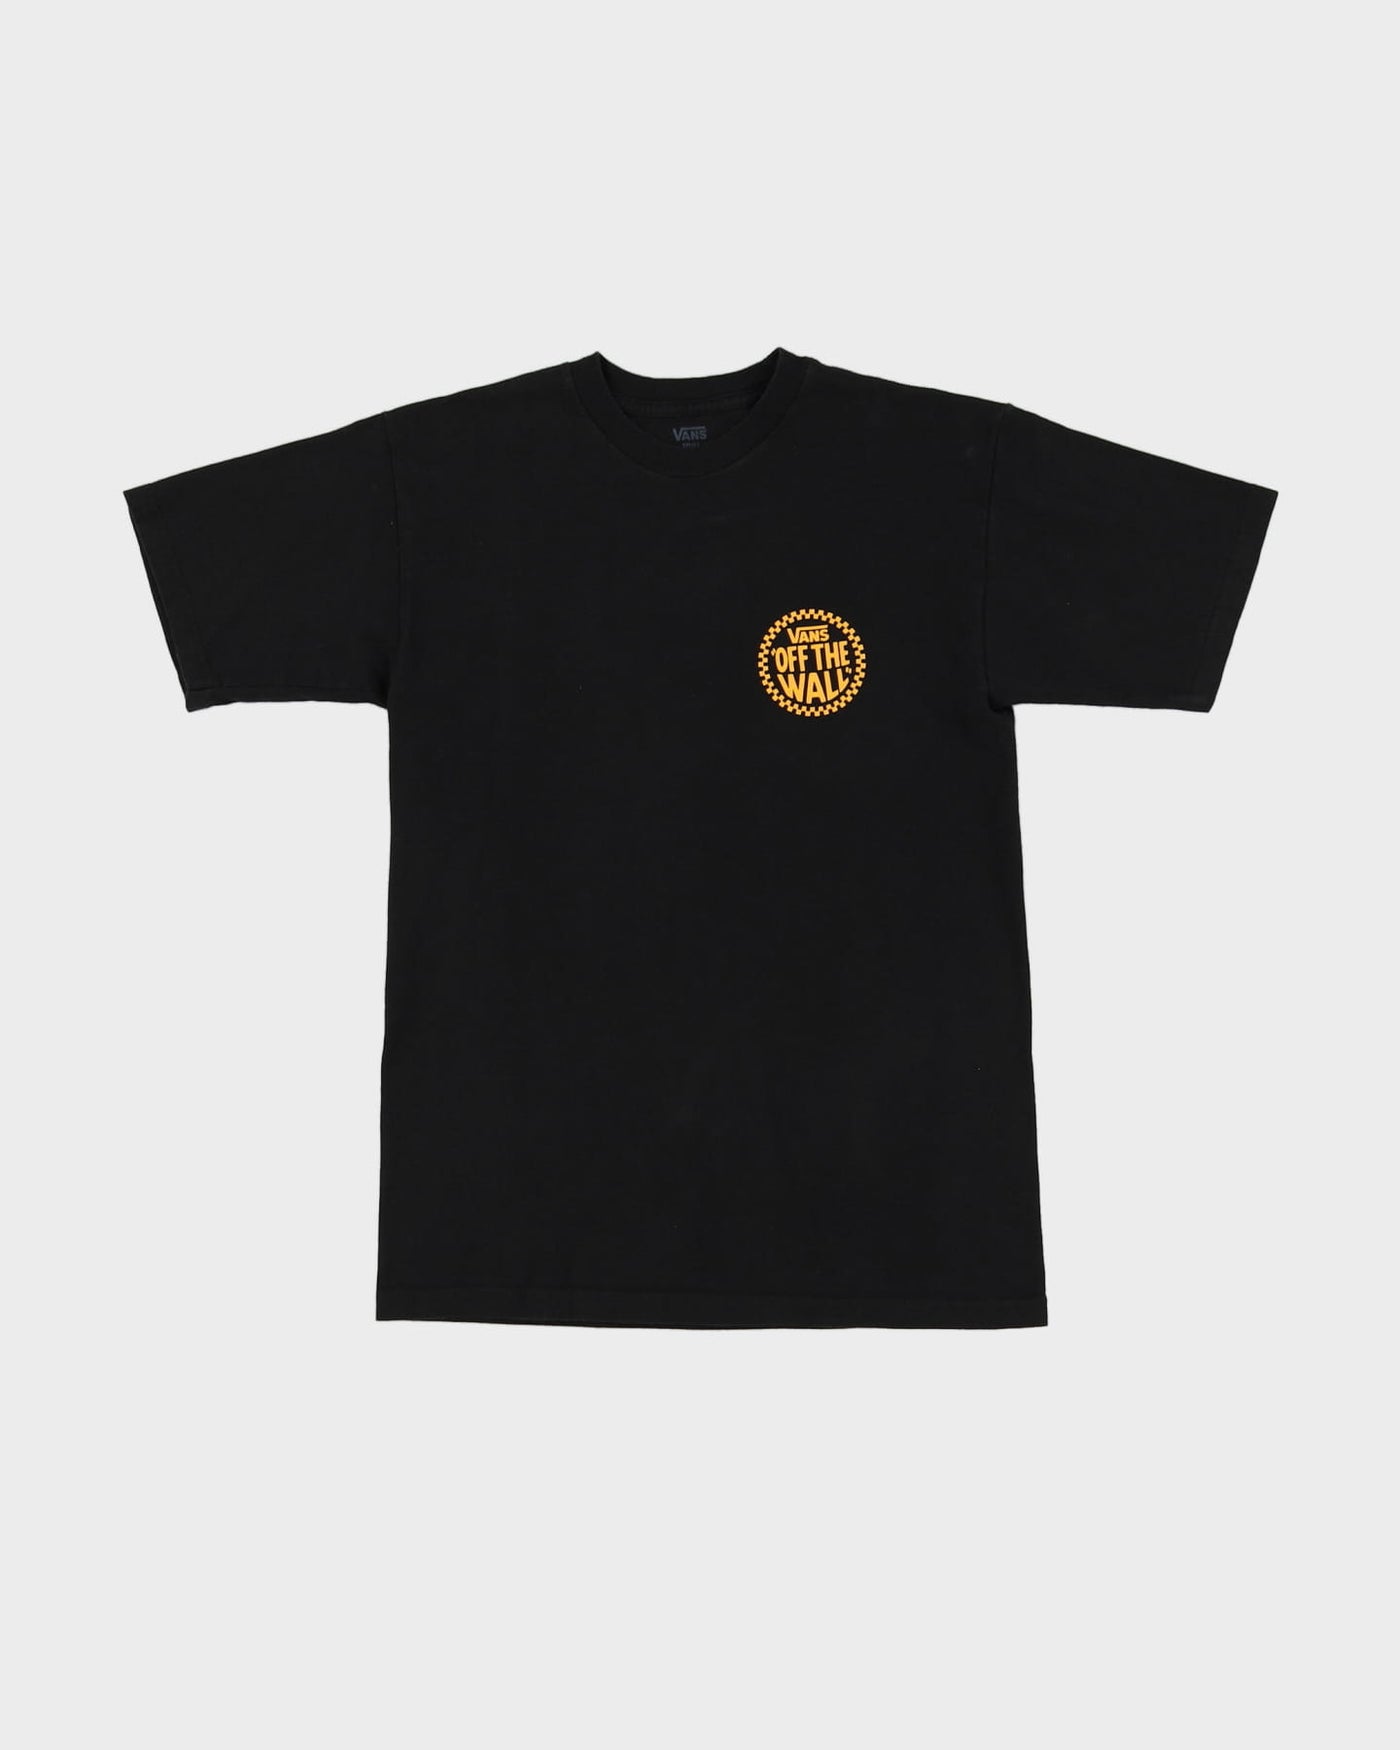 Vans Black Graphic T-Shirt - S